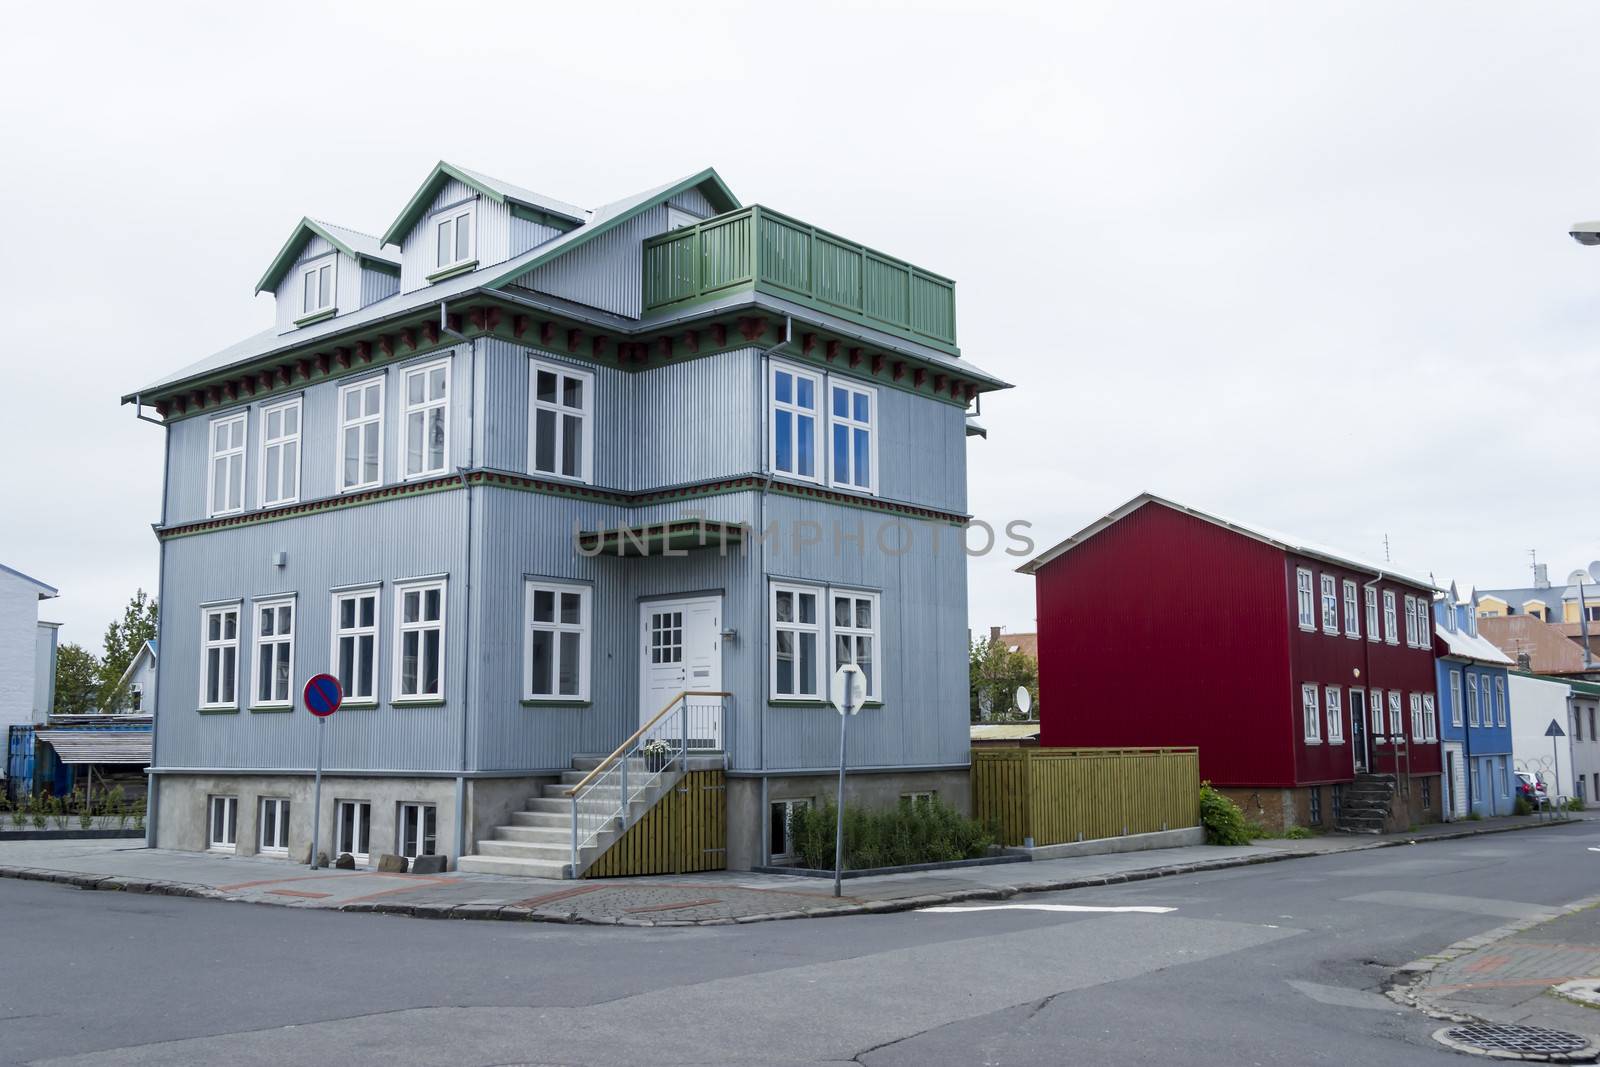 Buildings in Reykjavik  by Tetyana